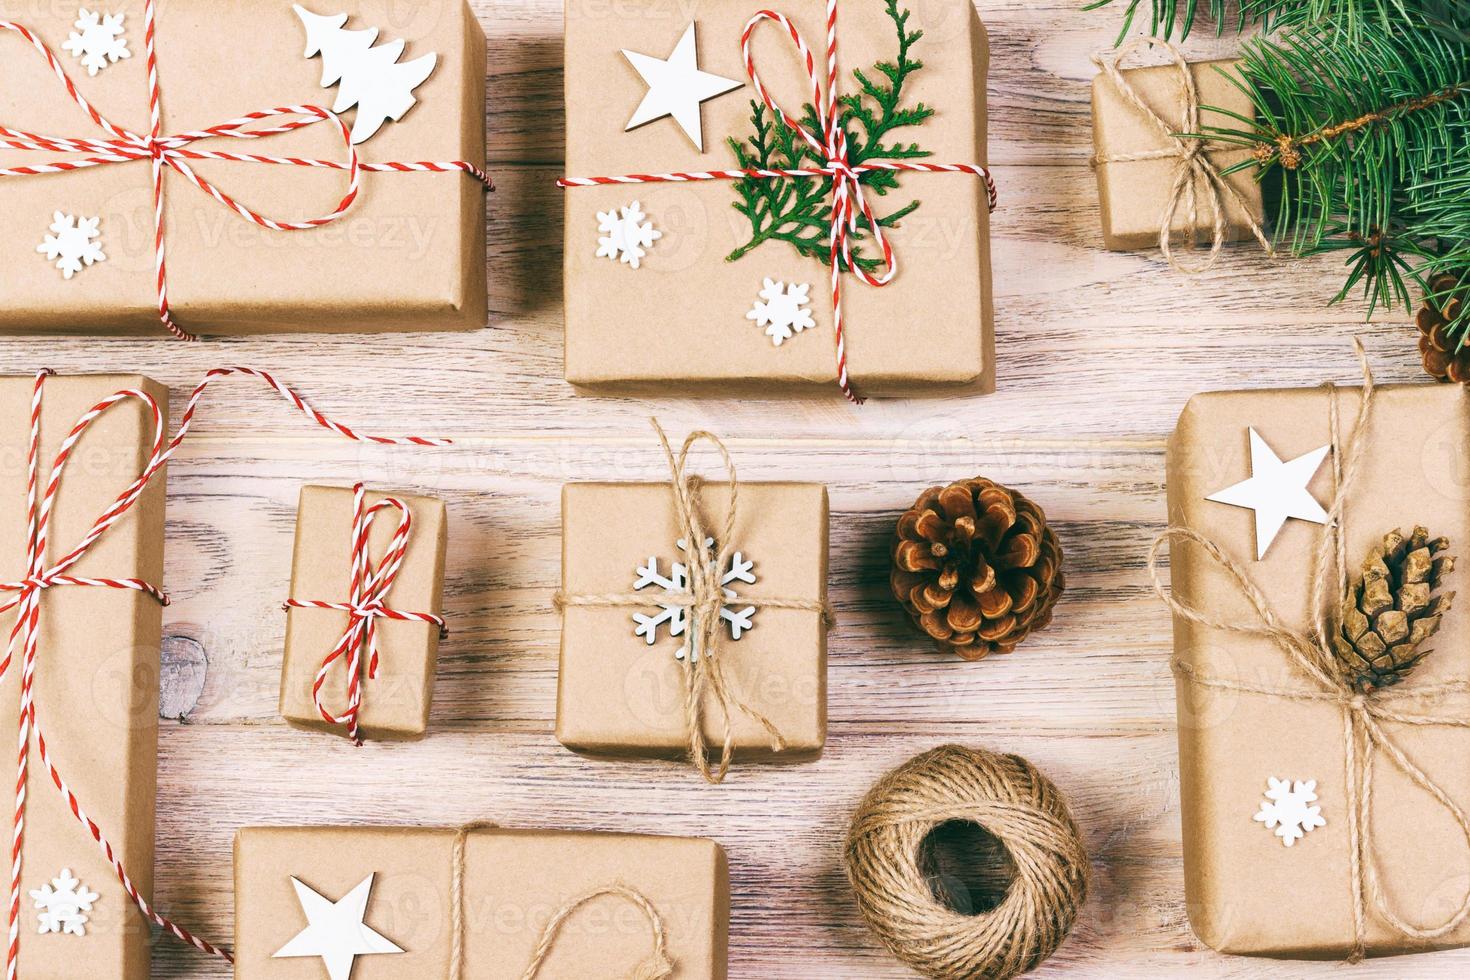 flache lage des objekts für frohe weihnachten und ein frohes neues jahr-konzept. Mischen Sie Geschenkboxen und Accessoires, Dekorationen und Ornamente für die Weihnachtszeit. getönt foto